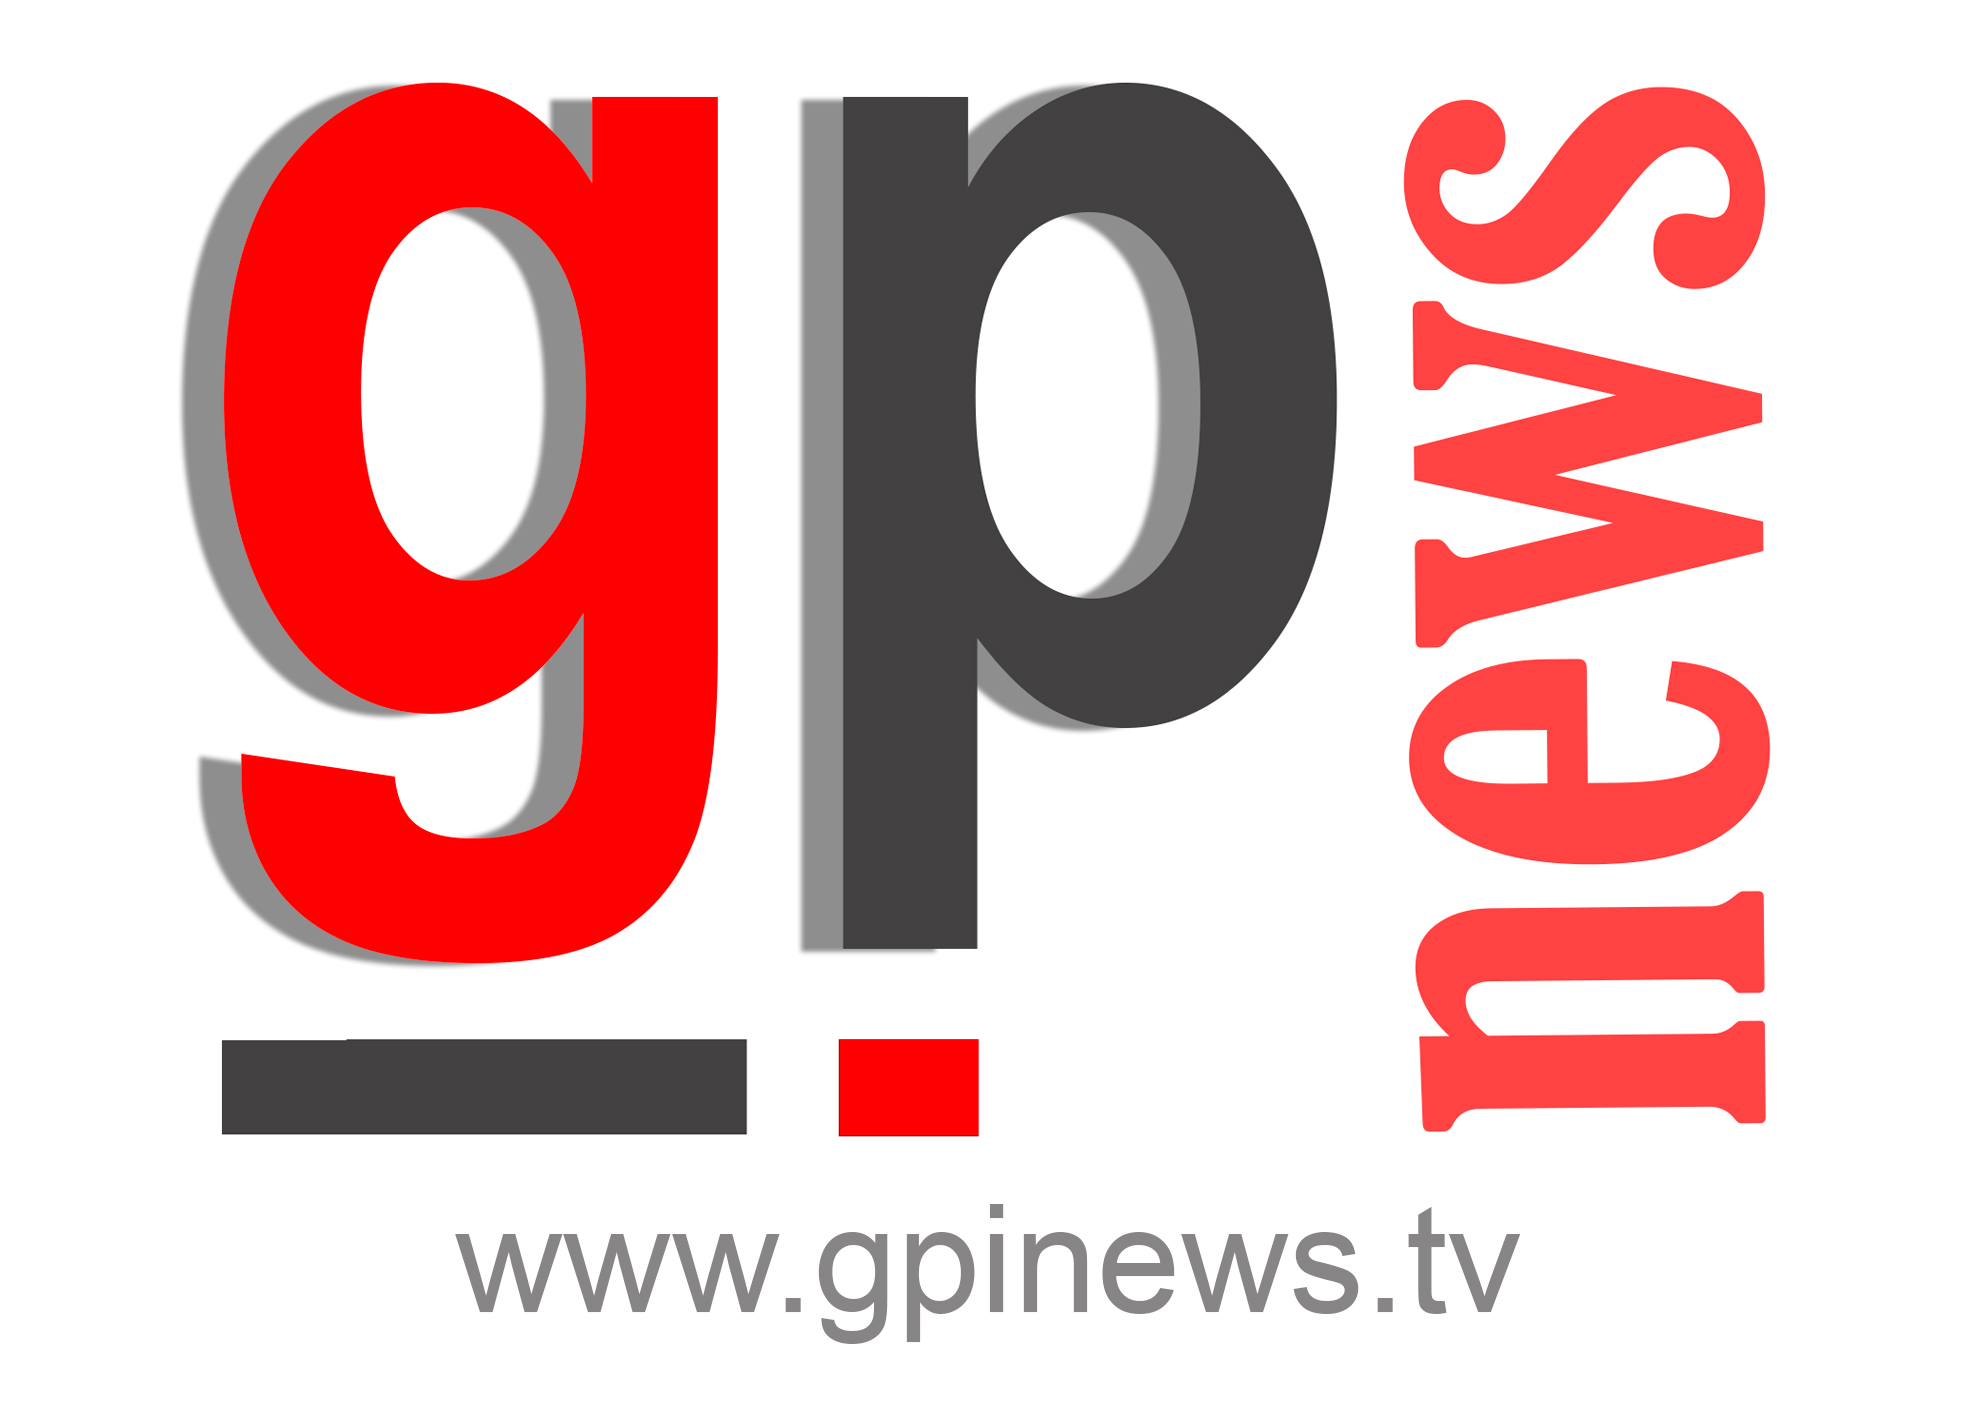 canal de noticias gpinews